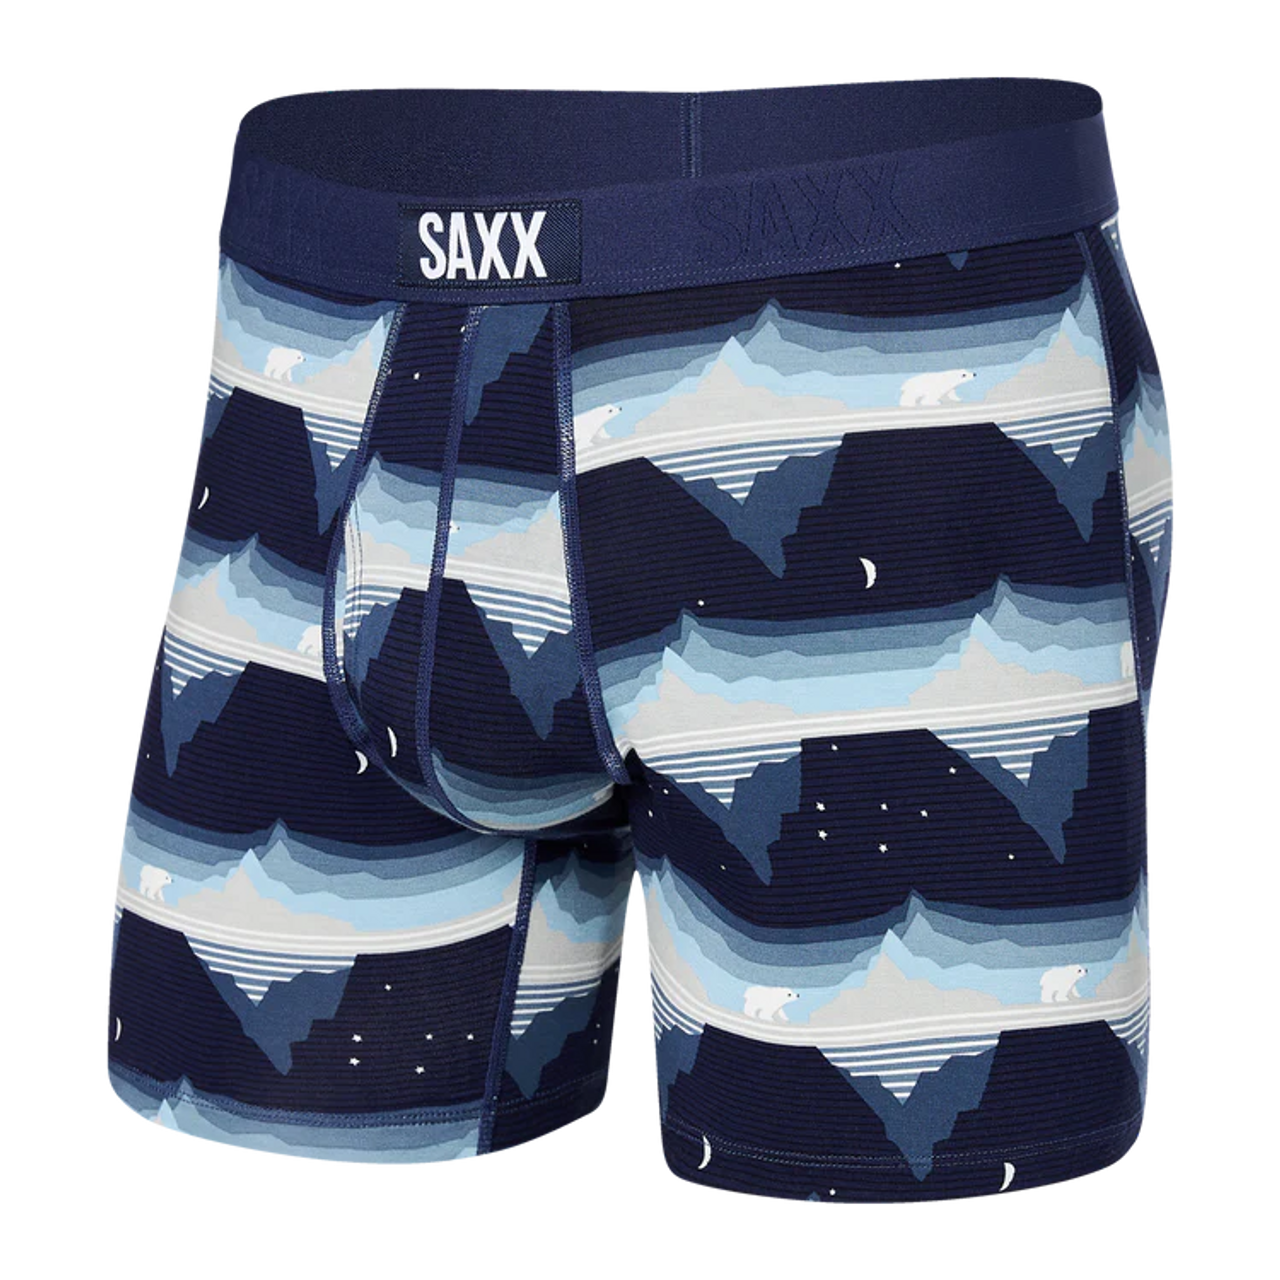 Saxx Underwear Vibe Are Super Soft Trunk Boxers For Men